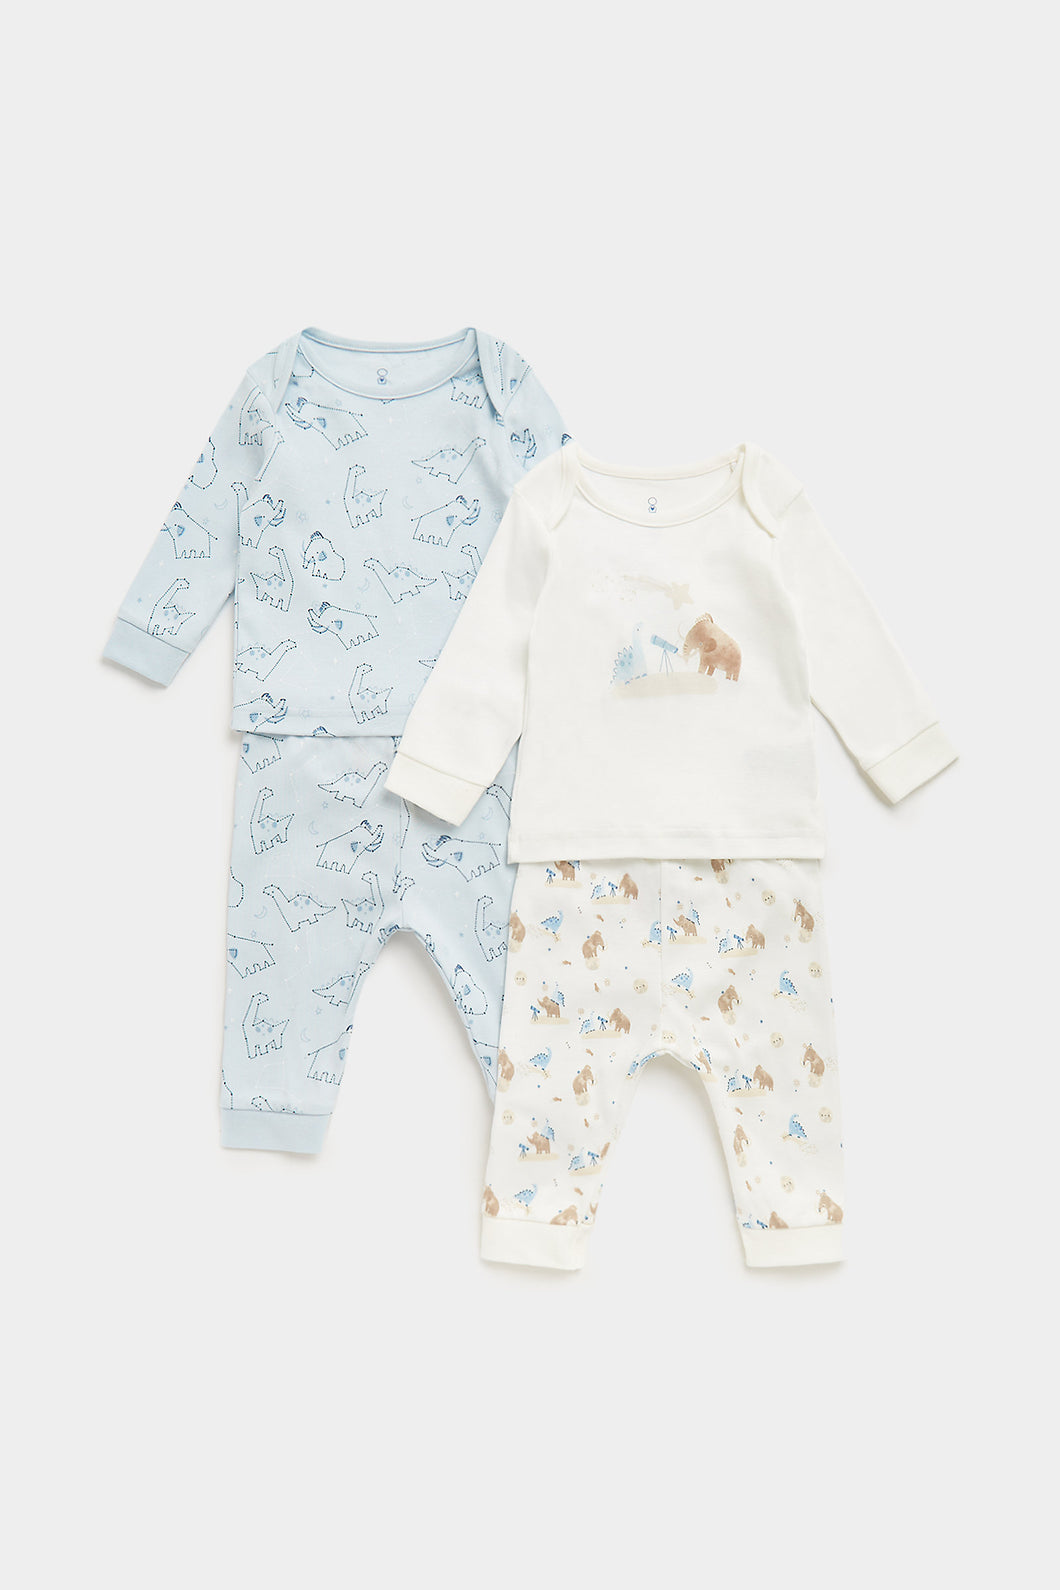 Mothercare Dinosaur Baby Pyjamas - 2 Pack